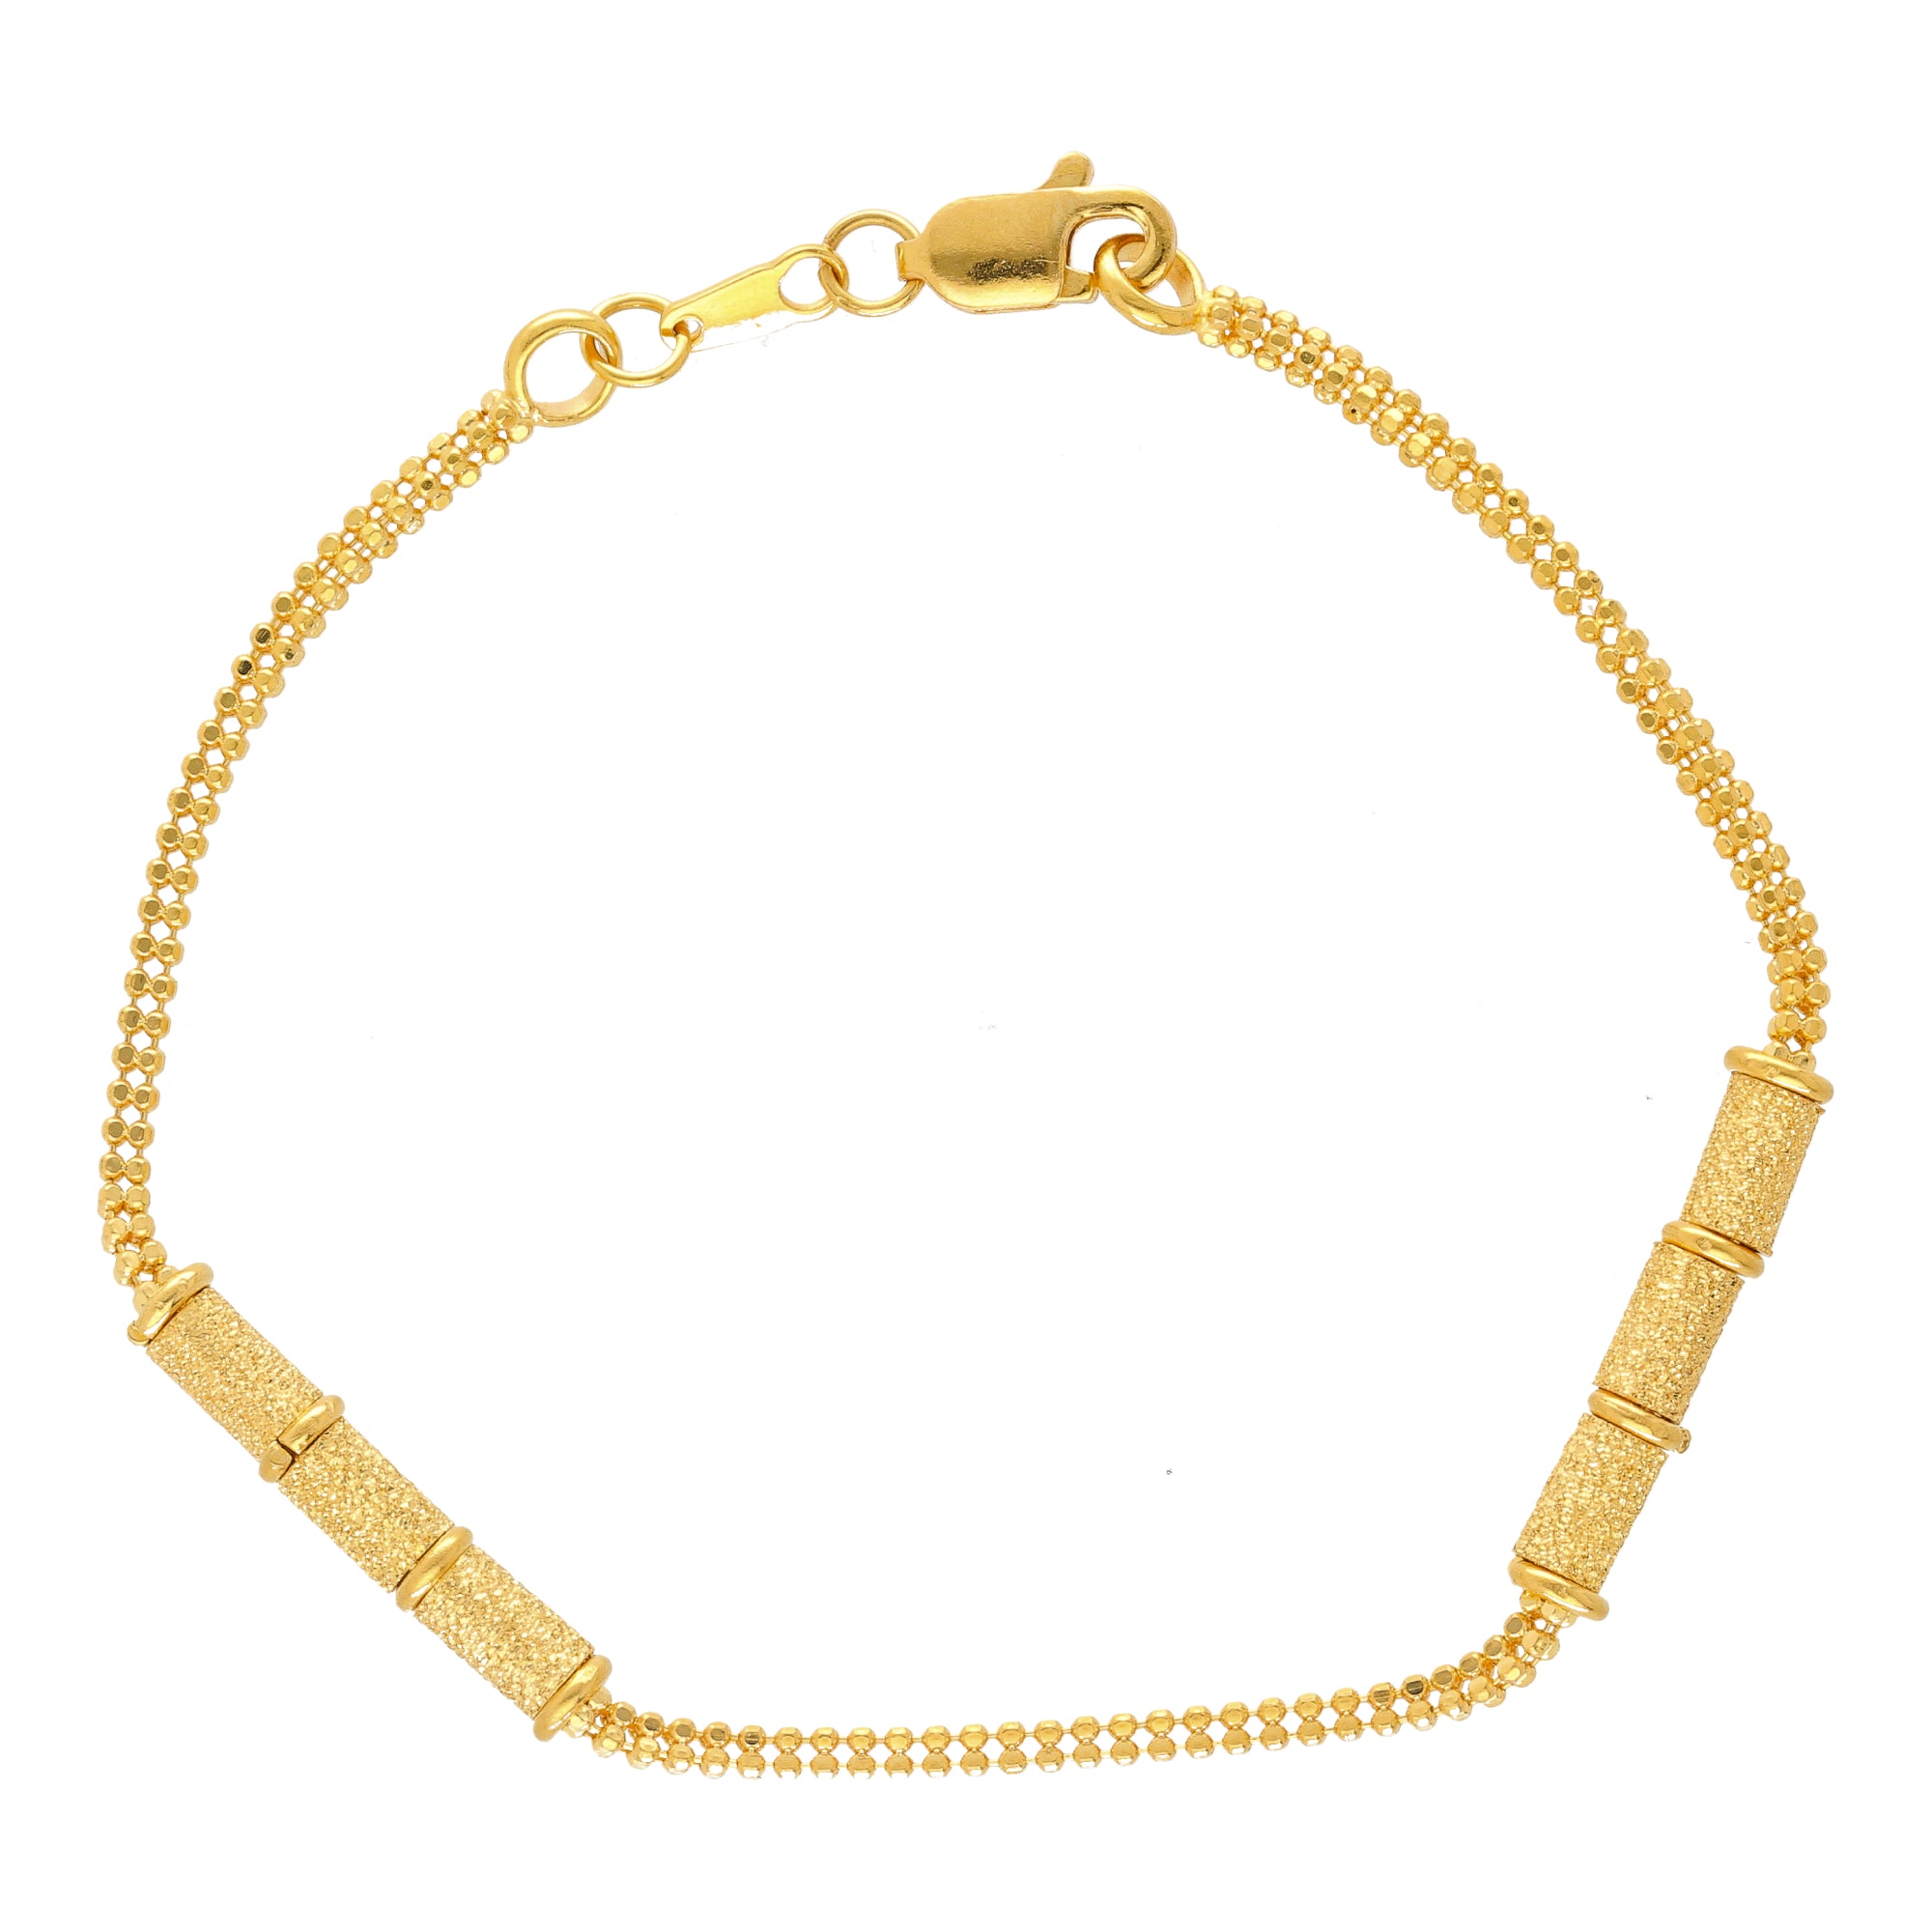 GOLDSHINE 22K Gold Women Bracelet 6.25